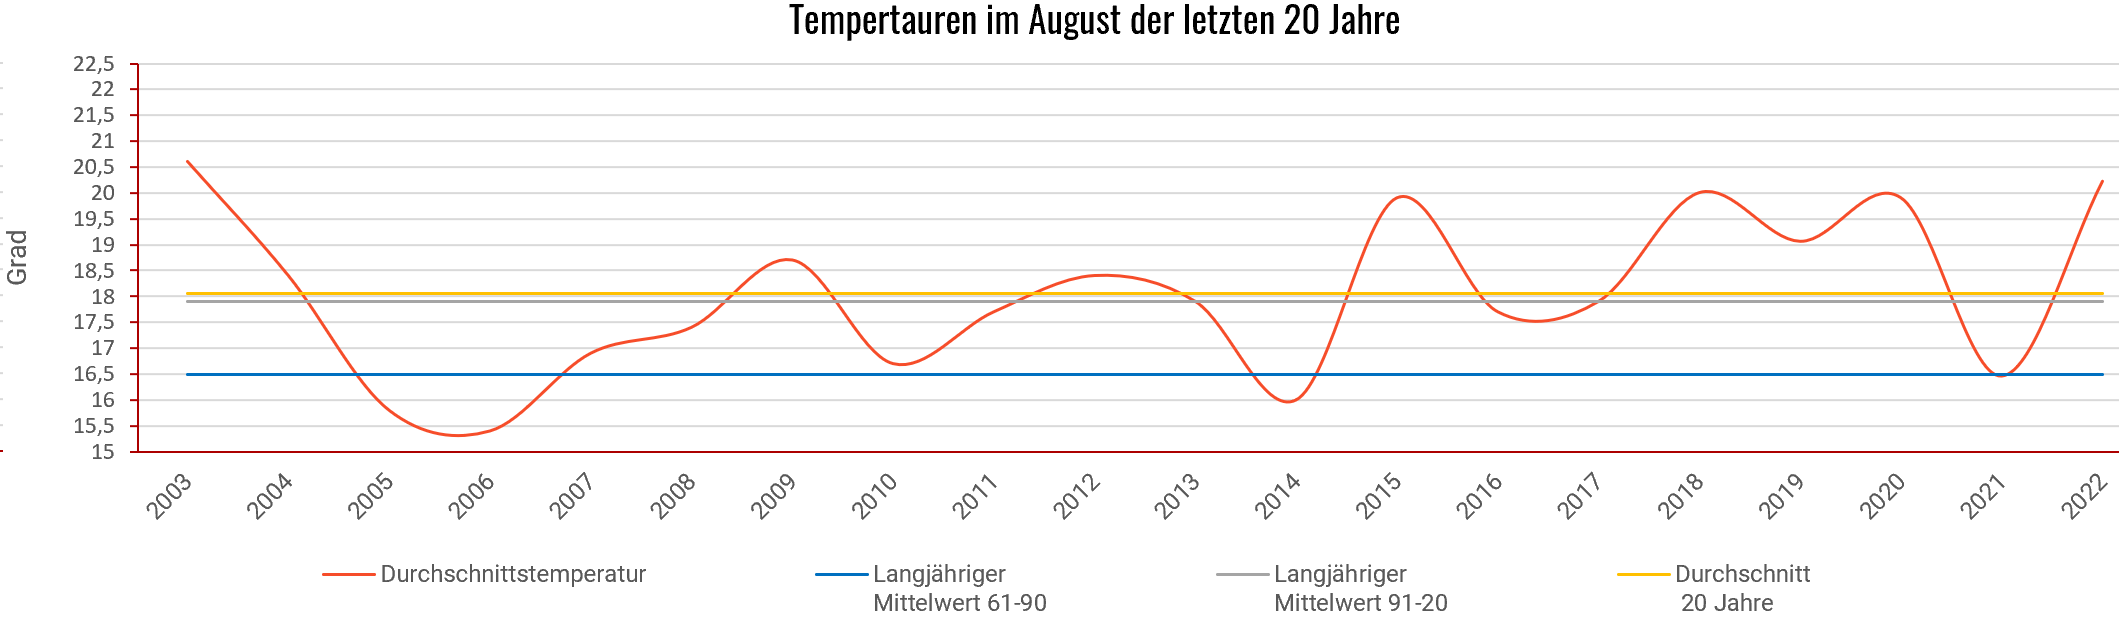 Klimadiagramm August der letzten 20 Jahre